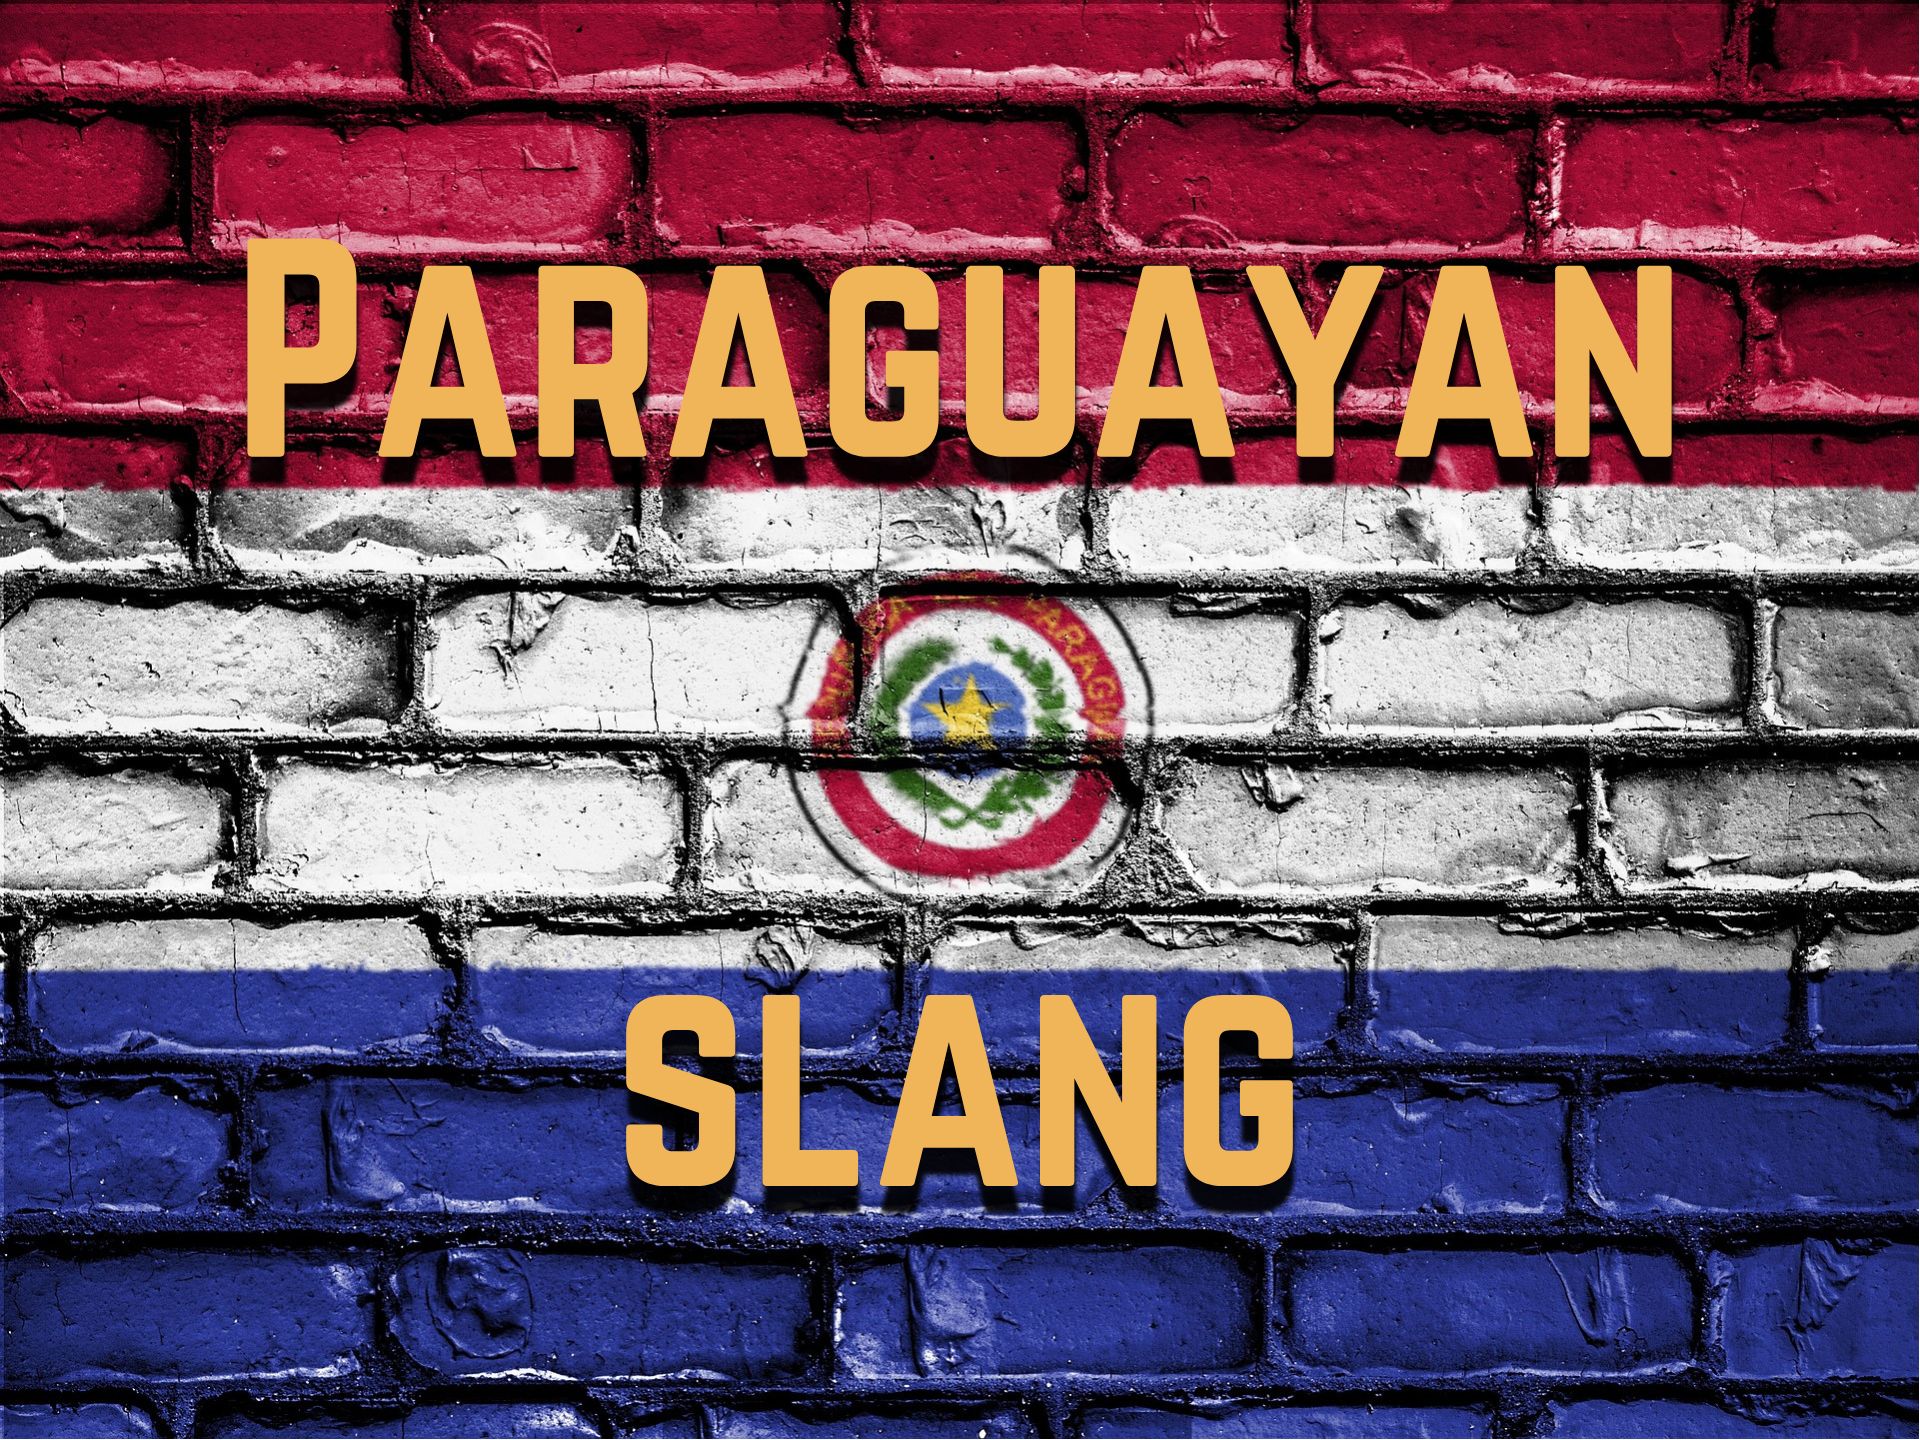 Paraguayan slang